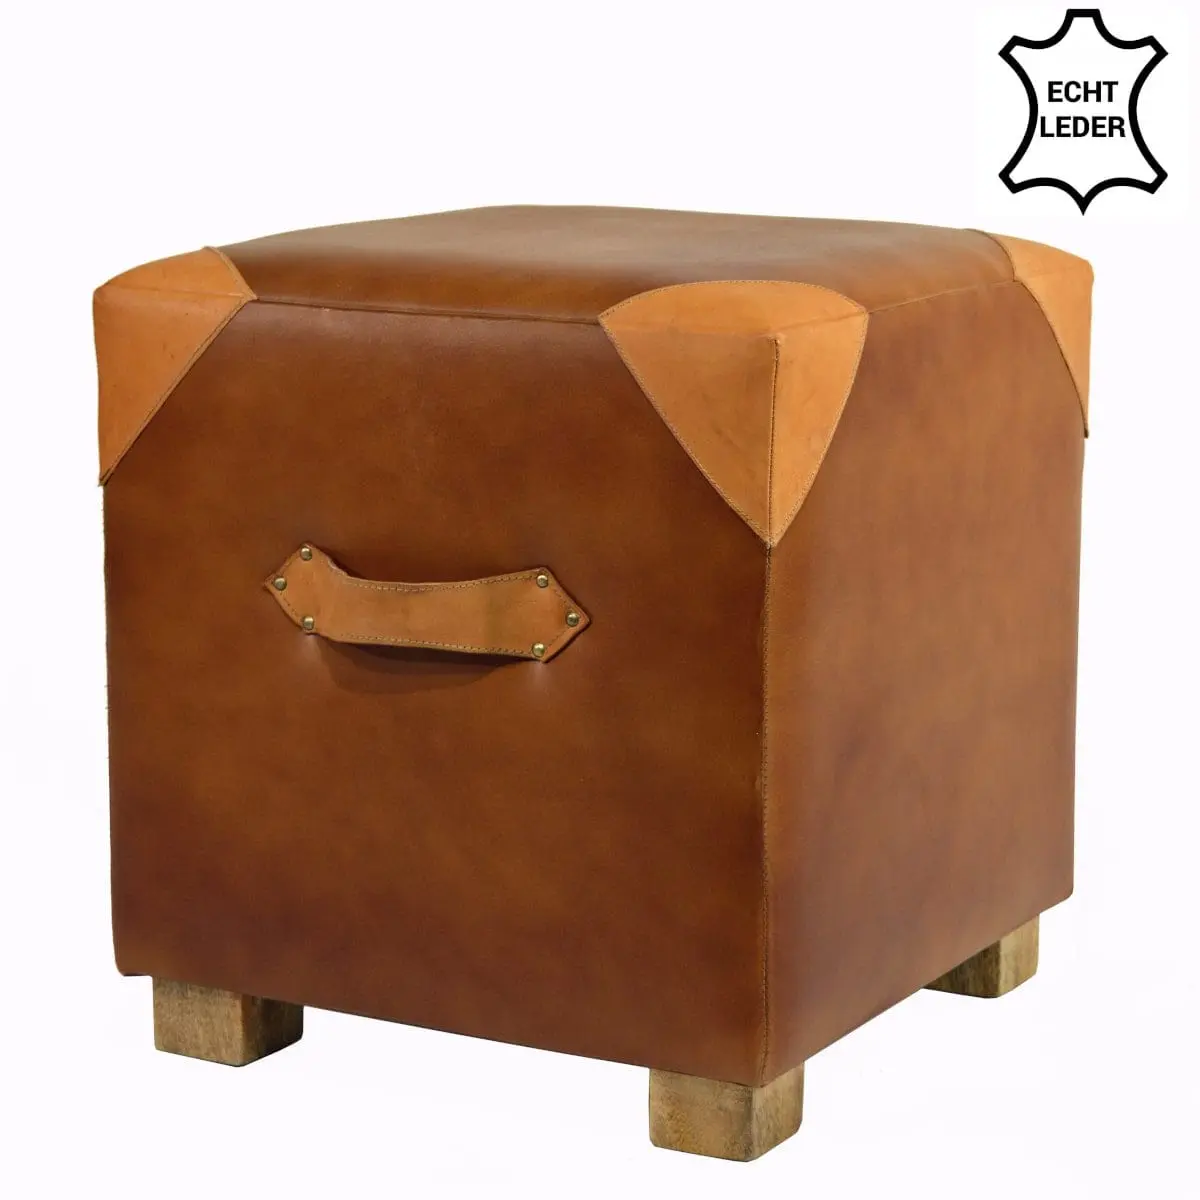 Turn Cube, Retro Turnhallen Möbel Design aus Echt-Leder cognac braun